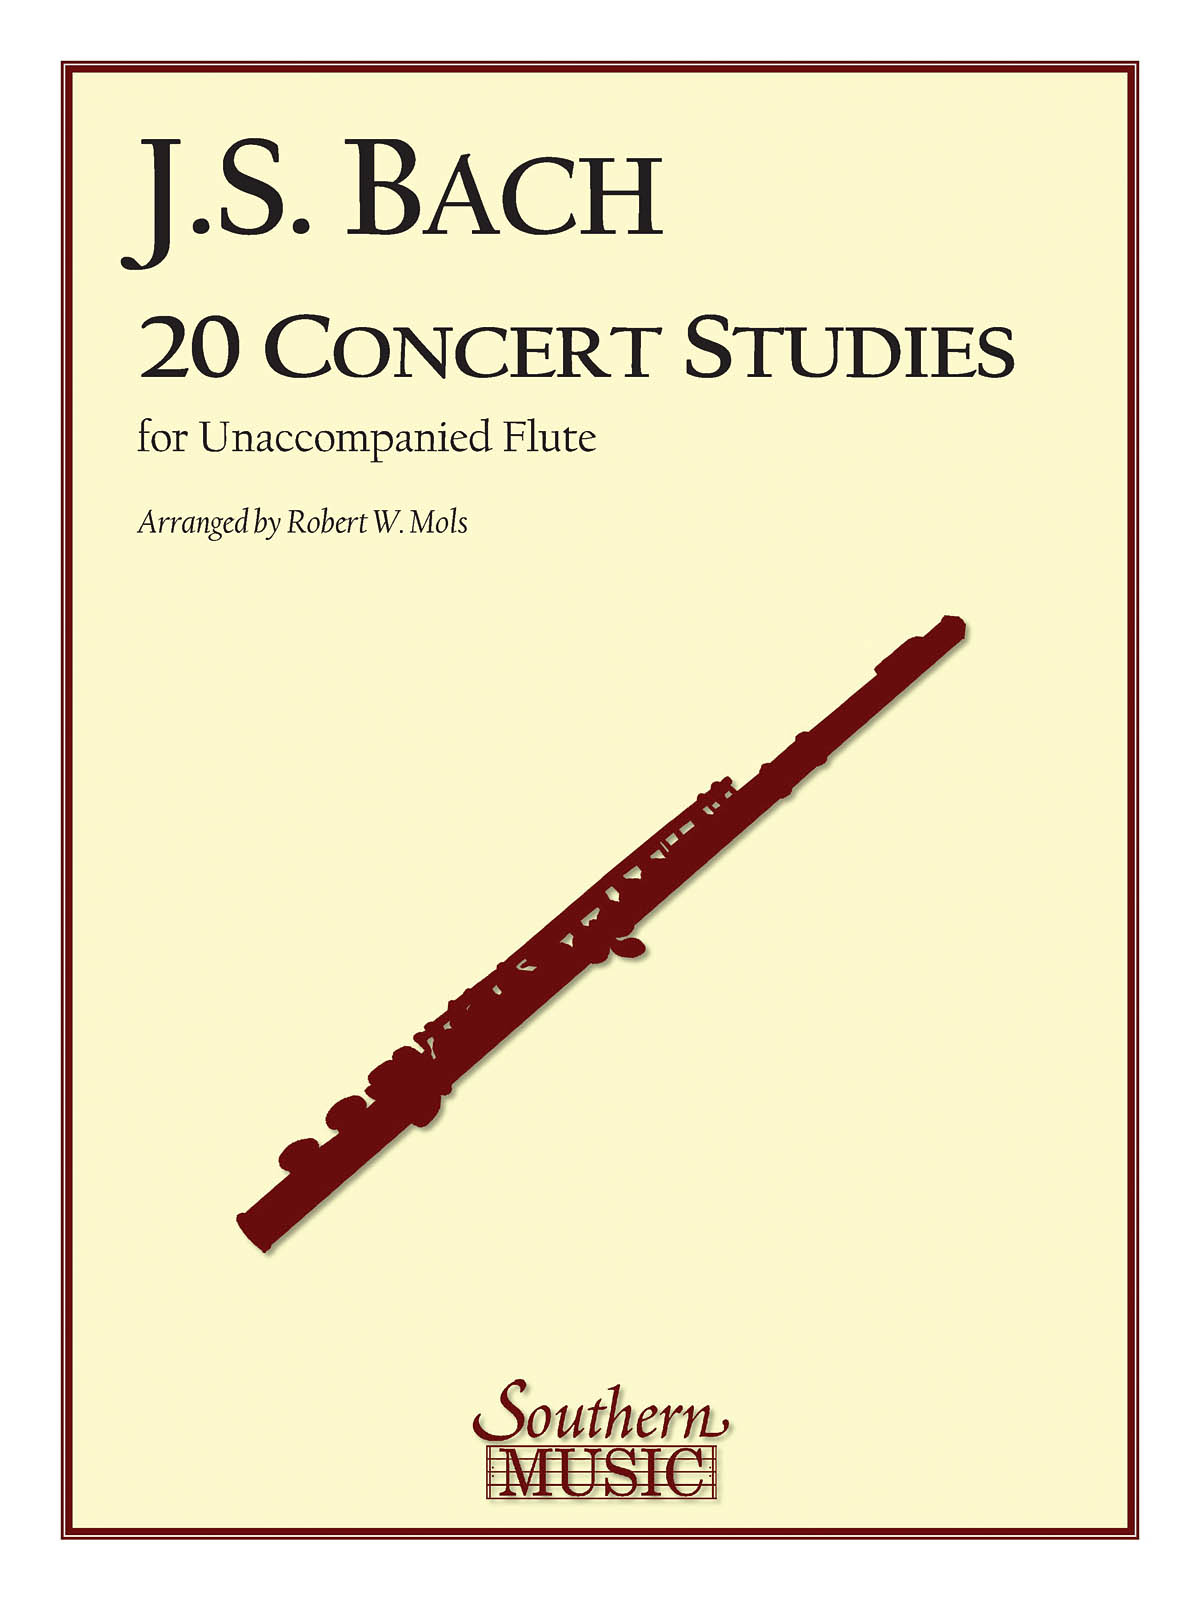 20 (Twenty) Concert Studies